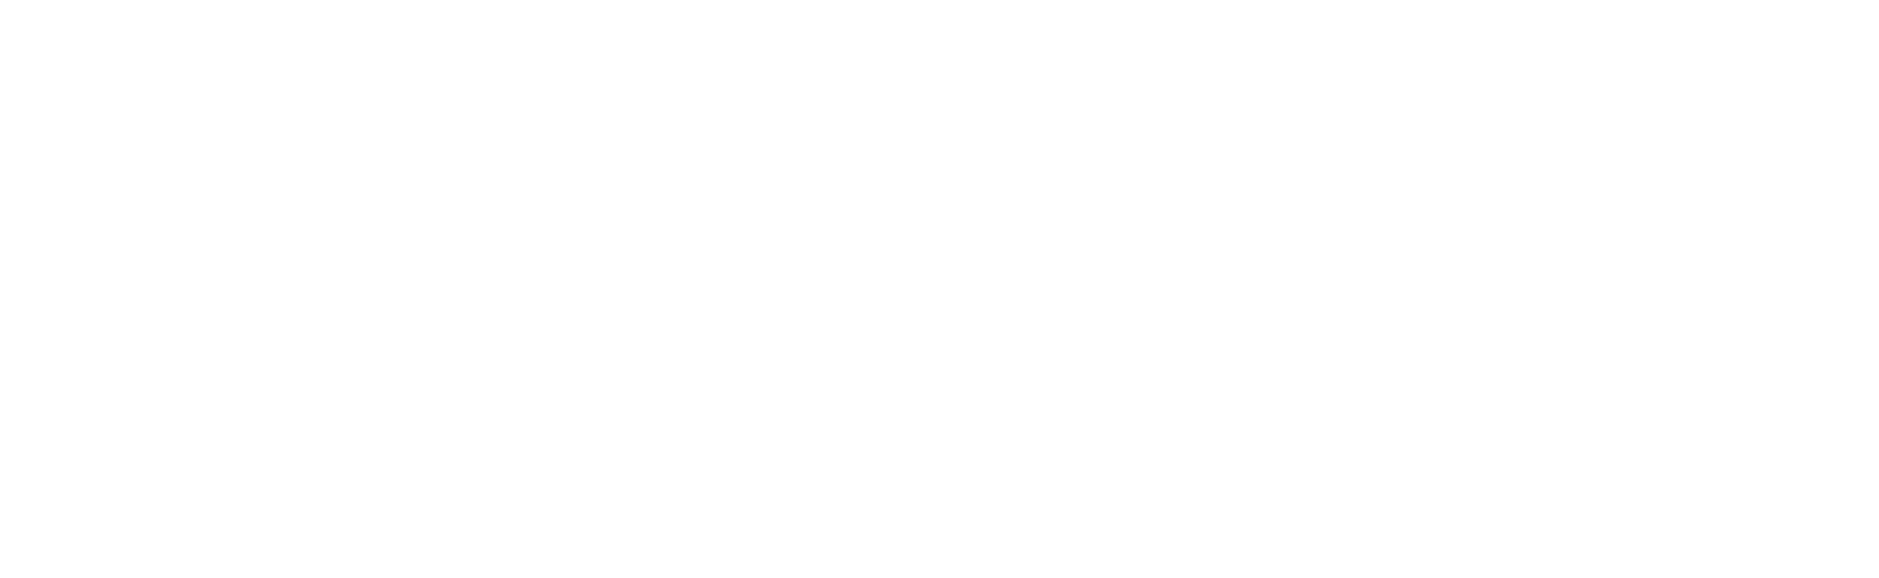 logo Krakowa